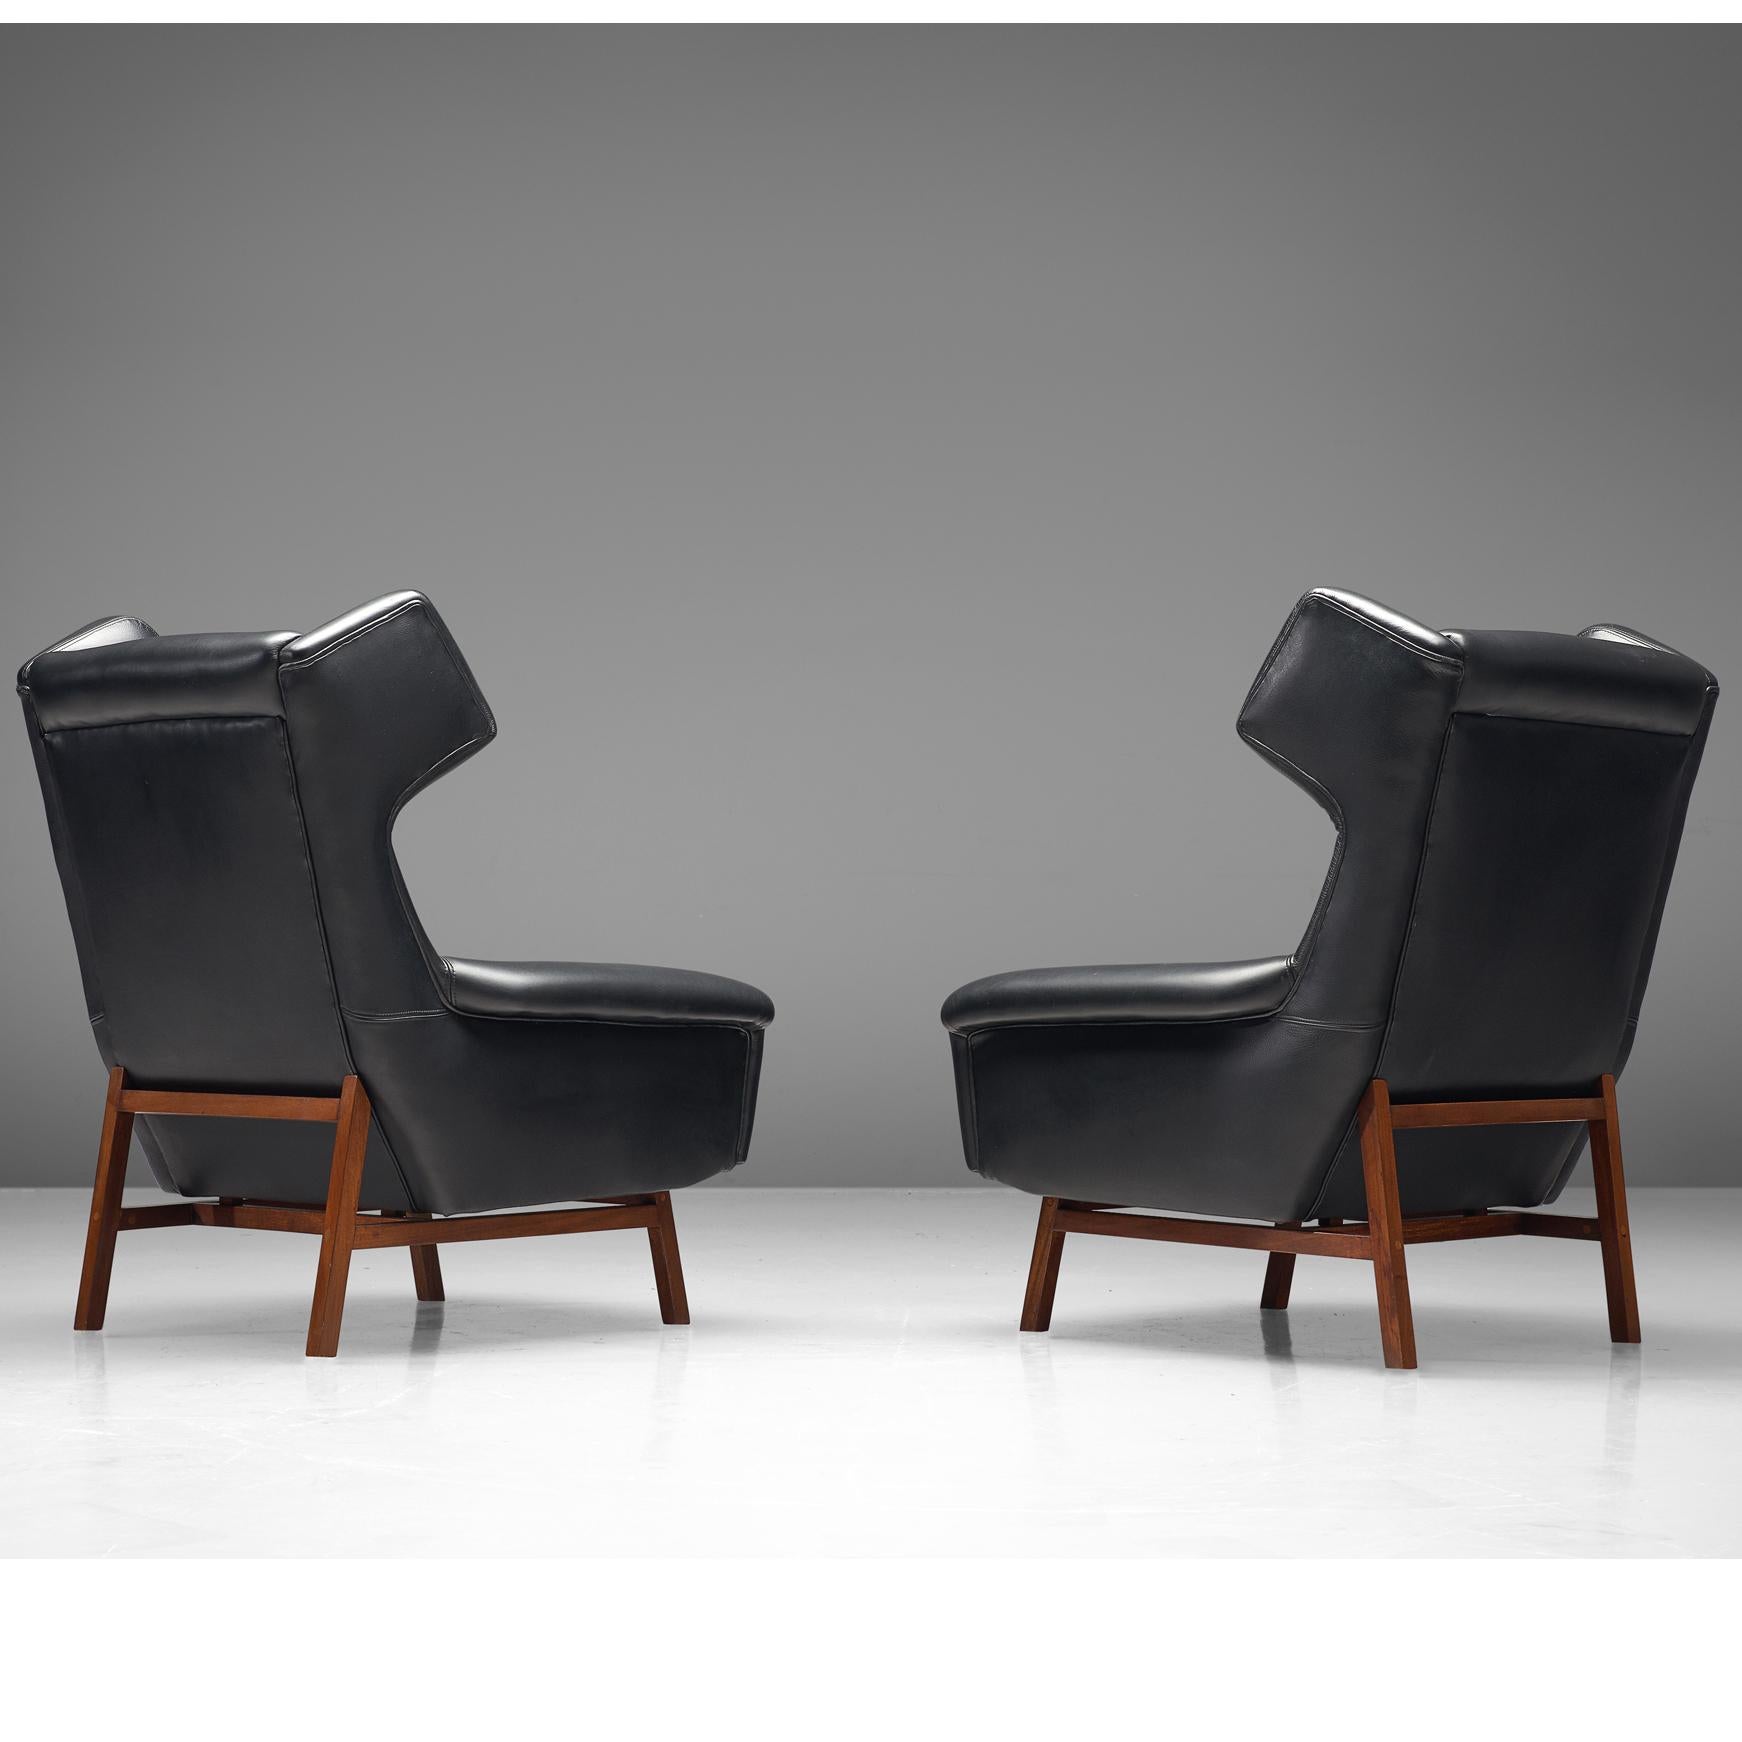 Paire de chaises longues, cuir, acajou, Italie, années 1960

Cette magnifique paire de chaises longues robustes et volumineuses présente de jolis détails et des lignes élégantes. Les 